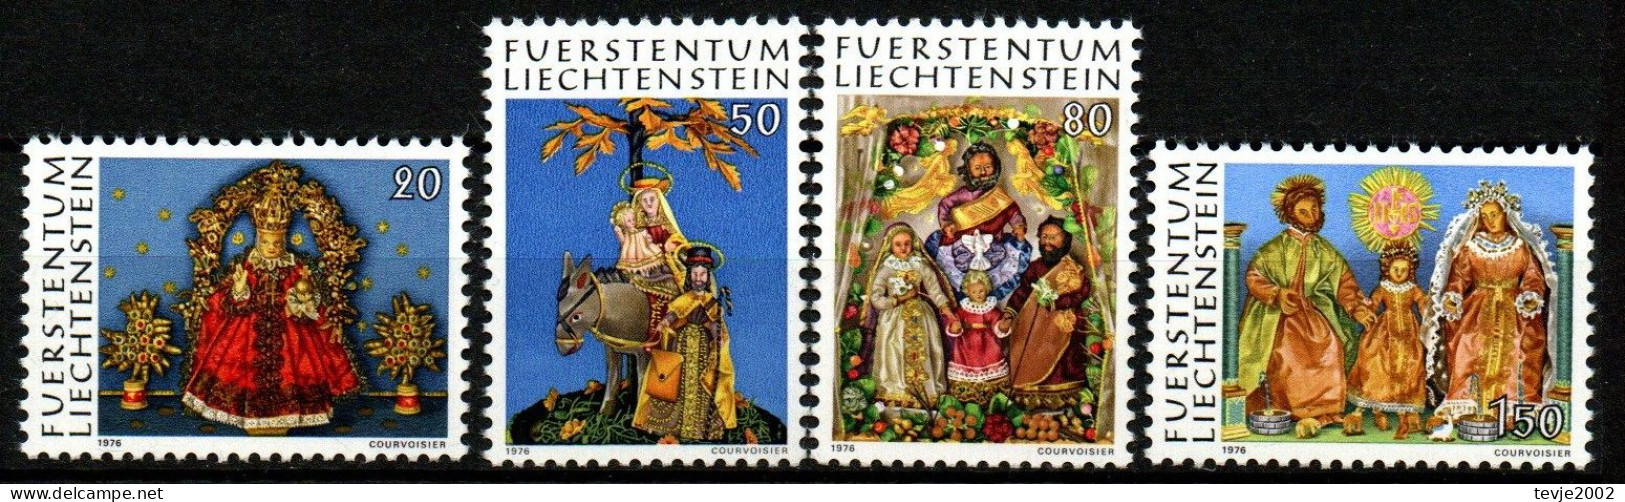 Liechtenstein 1976 - Mi.Nr. 662 - 665 - Postfrisch MNH - Weihnachten Christmas Noel - Unused Stamps